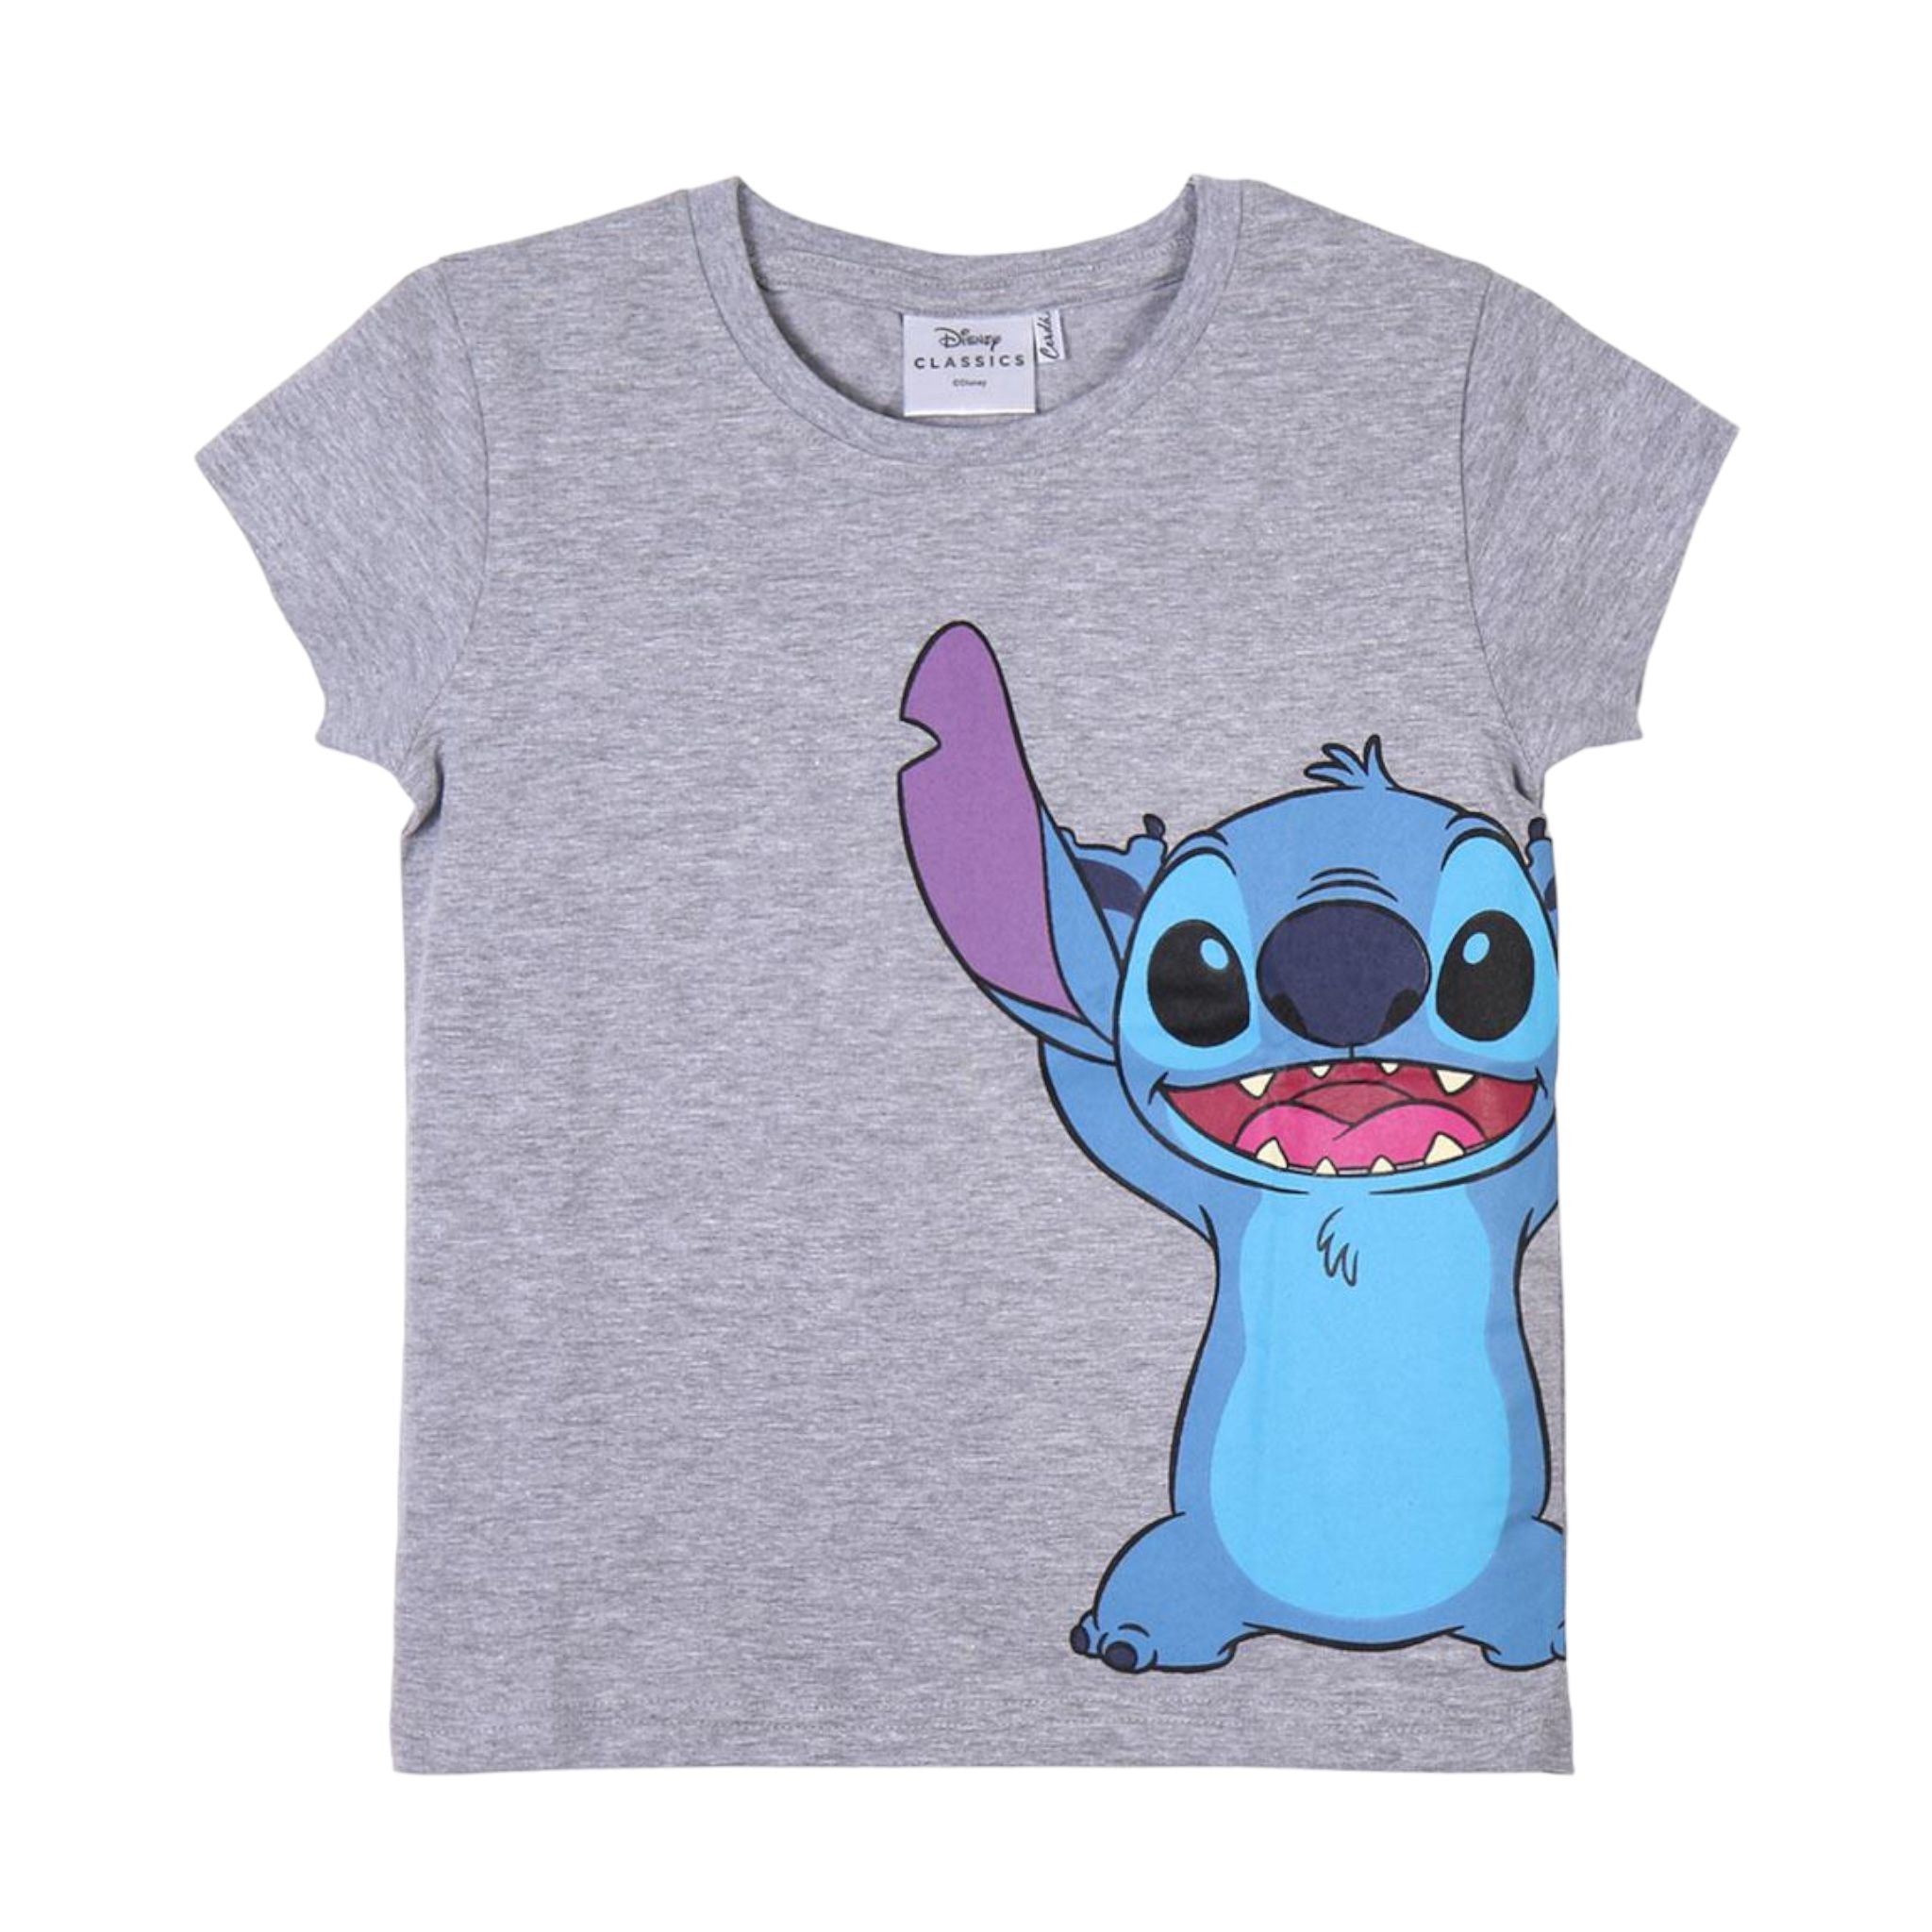 T-shirt Stitch - Mstore016